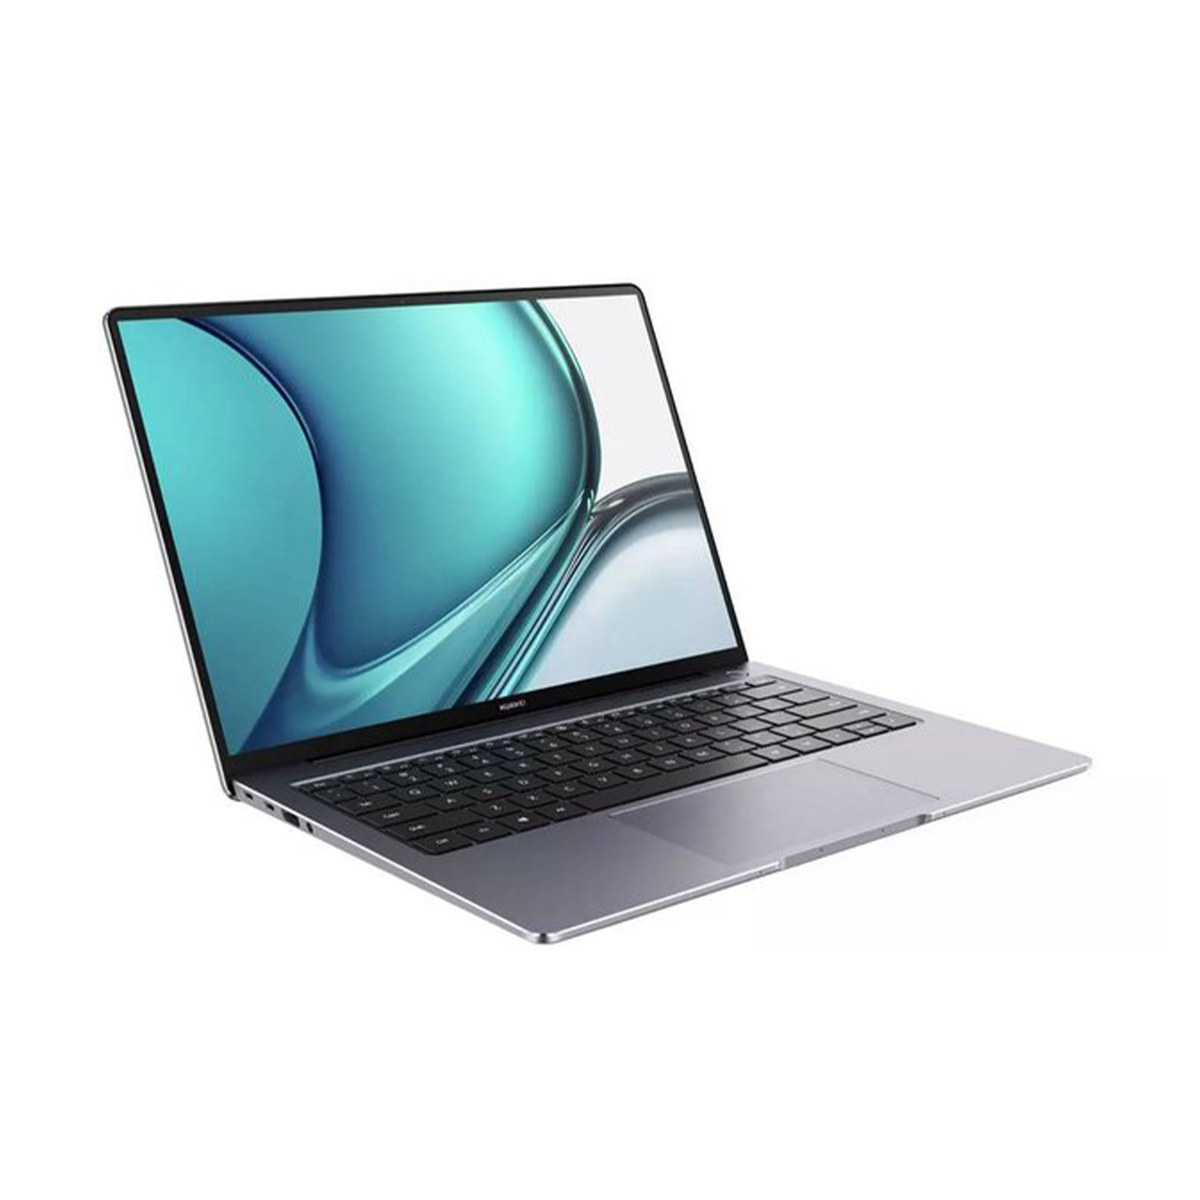 Huawei MateBook 14S (2021) Intel Core i7,16GB RAM,512GB SSD,Intel Iris Graphics,14.2" Display,Window 10,Space Grey,English/Arabic Keyboard